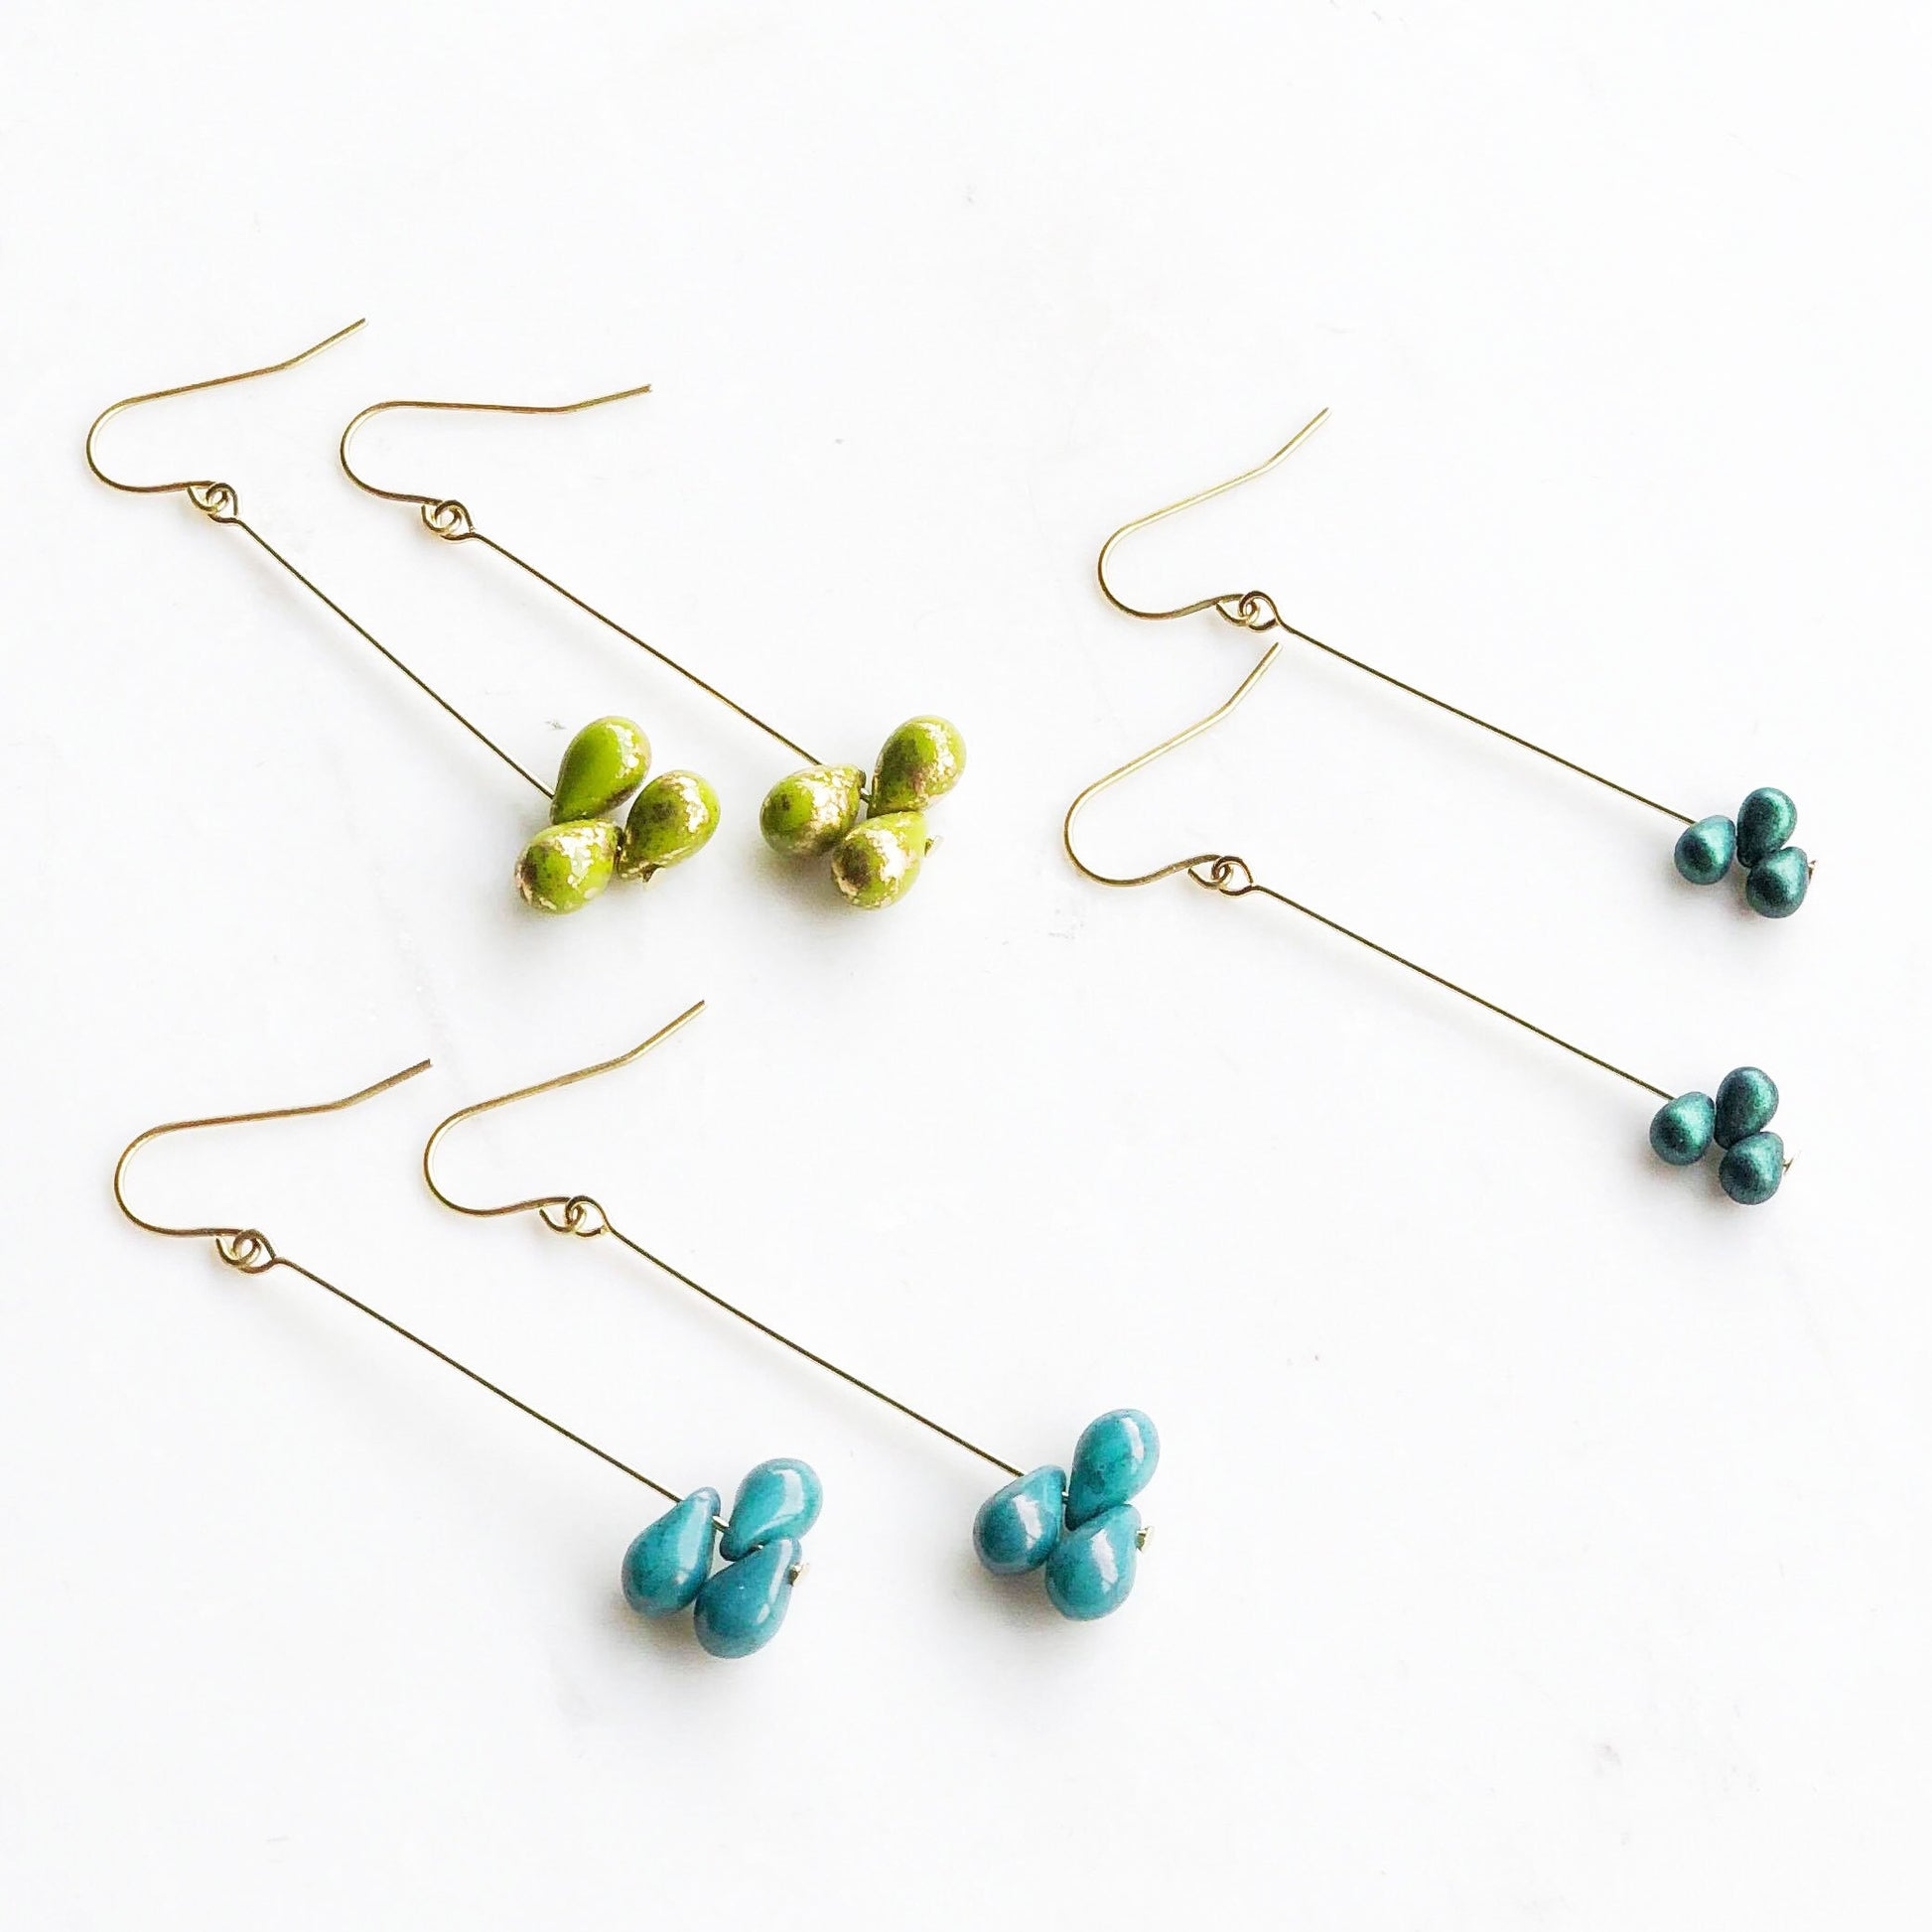 Tear drop earrings, green drop earrings, emerald earrings, turquoise earrings, blue drop earrings, bridesmaid earrings